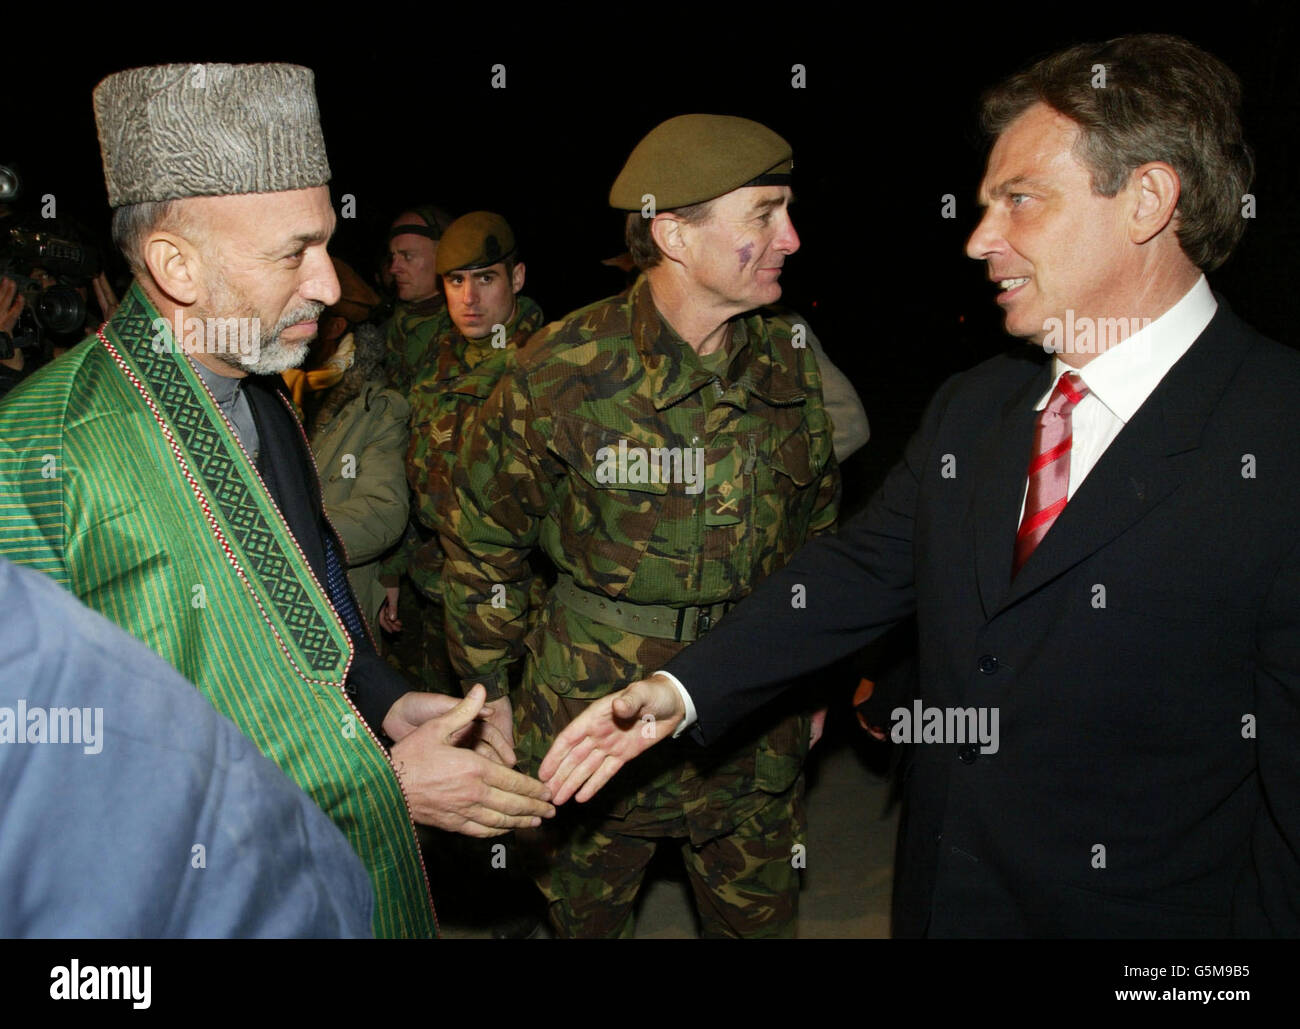 Der britische Premierminister Tony Blair (R) trifft bei seiner Ankunft auf dem Luftstützpunkt Bagram mit dem afghanischen Interimsführer Hamid Karzai zusammen. Blair flog am Montag in Afghanistan ein und wurde der erste westliche Regierungschef, der das Land seit dem Sturz des Taliban-Regimes besuchte. Stockfoto